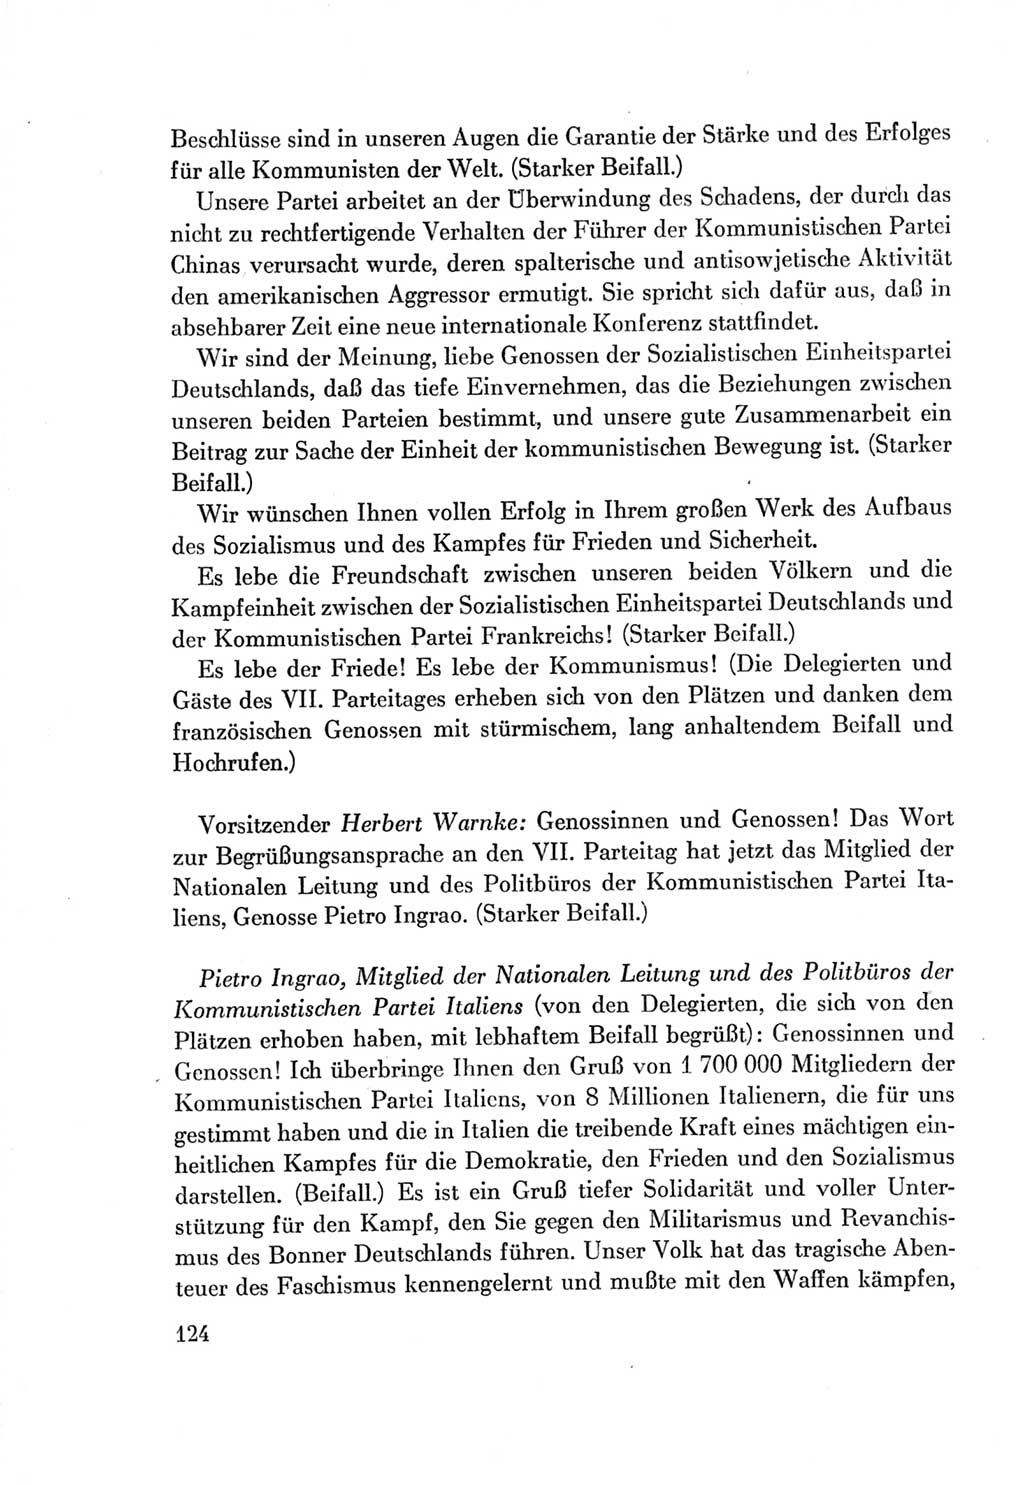 Protokoll der Verhandlungen des Ⅶ. Parteitages der Sozialistischen Einheitspartei Deutschlands (SED) [Deutsche Demokratische Republik (DDR)] 1967, Band Ⅱ, Seite 124 (Prot. Verh. Ⅶ. PT SED DDR 1967, Bd. Ⅱ, S. 124)